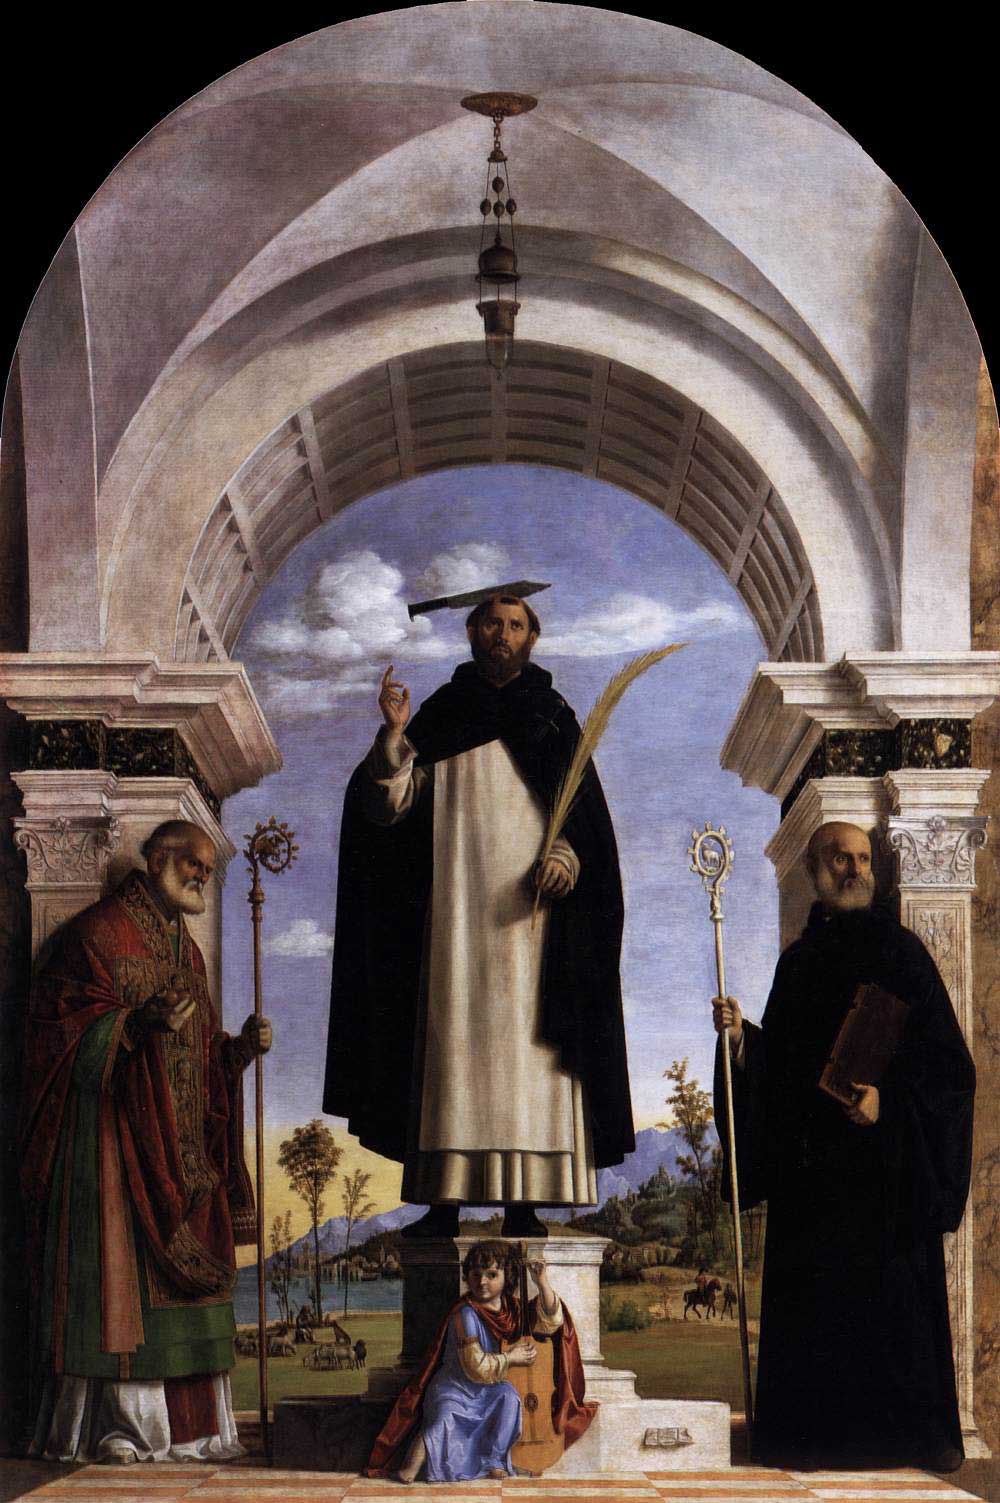 Άγιος Πέτρος ο Μάρτυρας με τον Αγίους Νικόλαο και Βενέδικτο by Τσίμα ντα Κονελιάνο - 1505-1506 - 330 × 216 